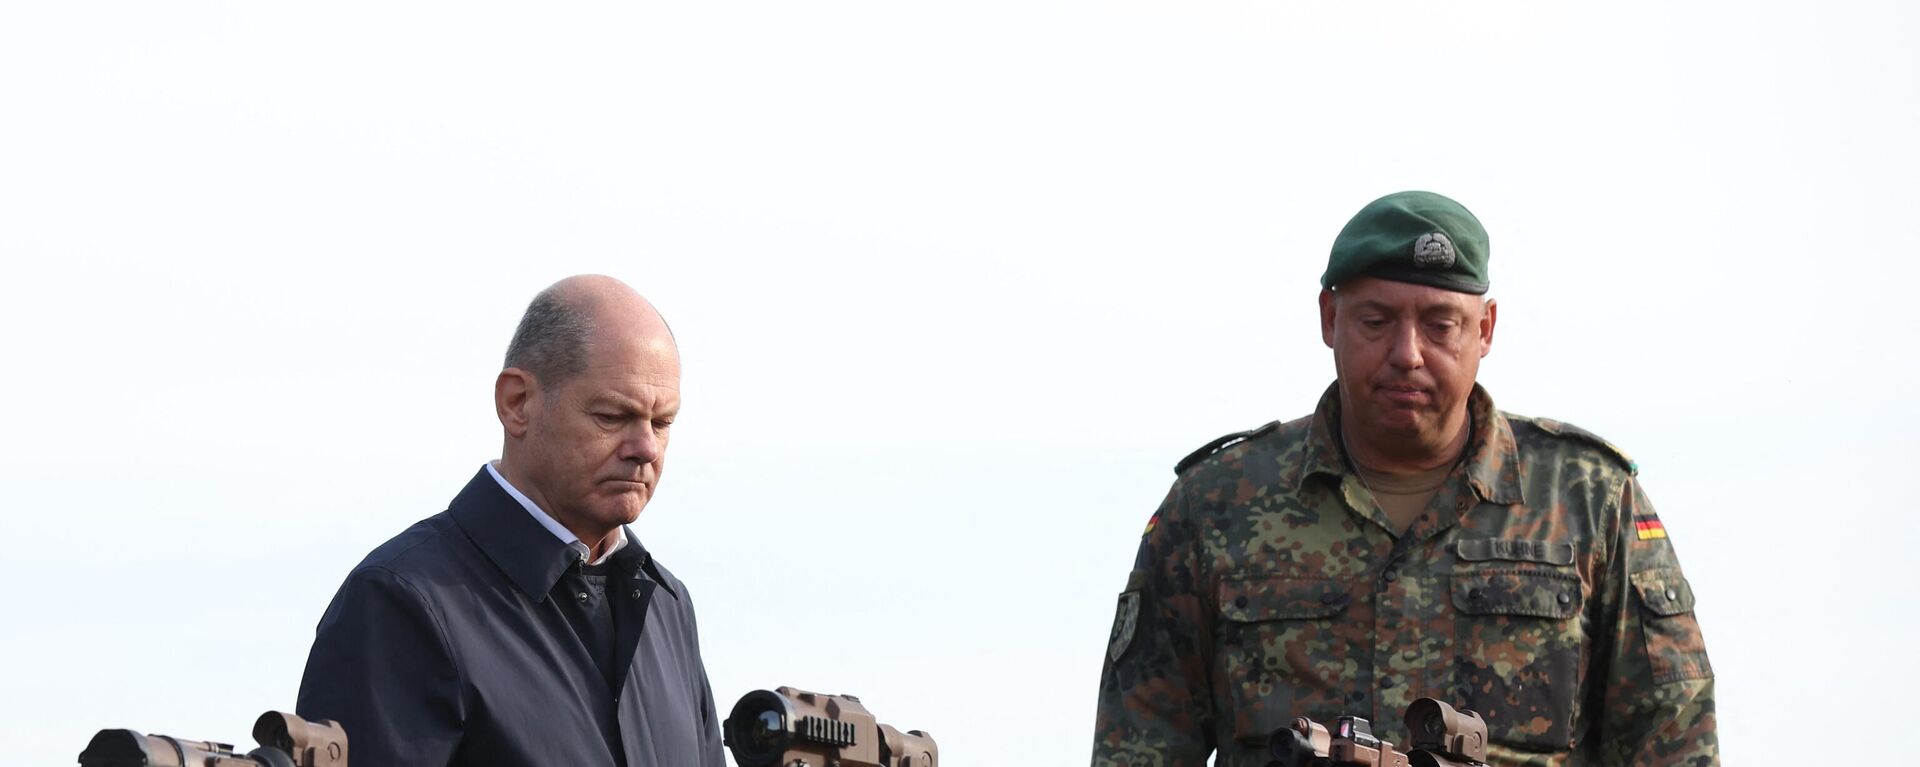 El canciller alemán Olaf Scholz observan los fusiles de asalto HK G36 de las fuerzas armadas alemanas Bundeswehr en Ostenholz, norte de Alemania, el 17 de octubre de 2022 - Sputnik Mundo, 1920, 02.03.2023